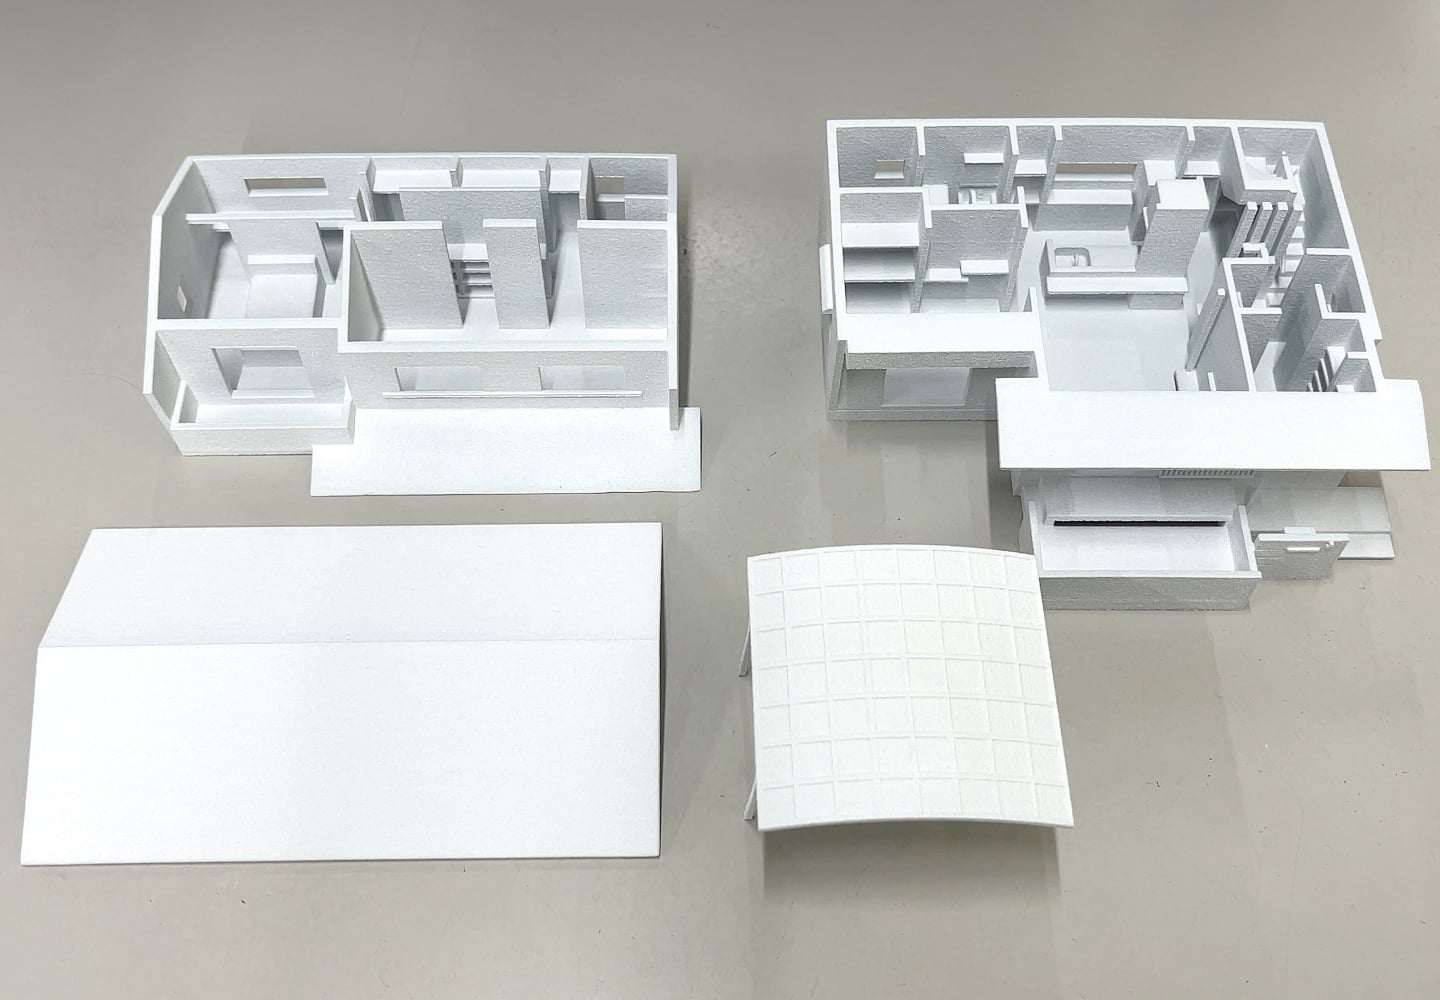 建築模型のホワイト造形のイメージ